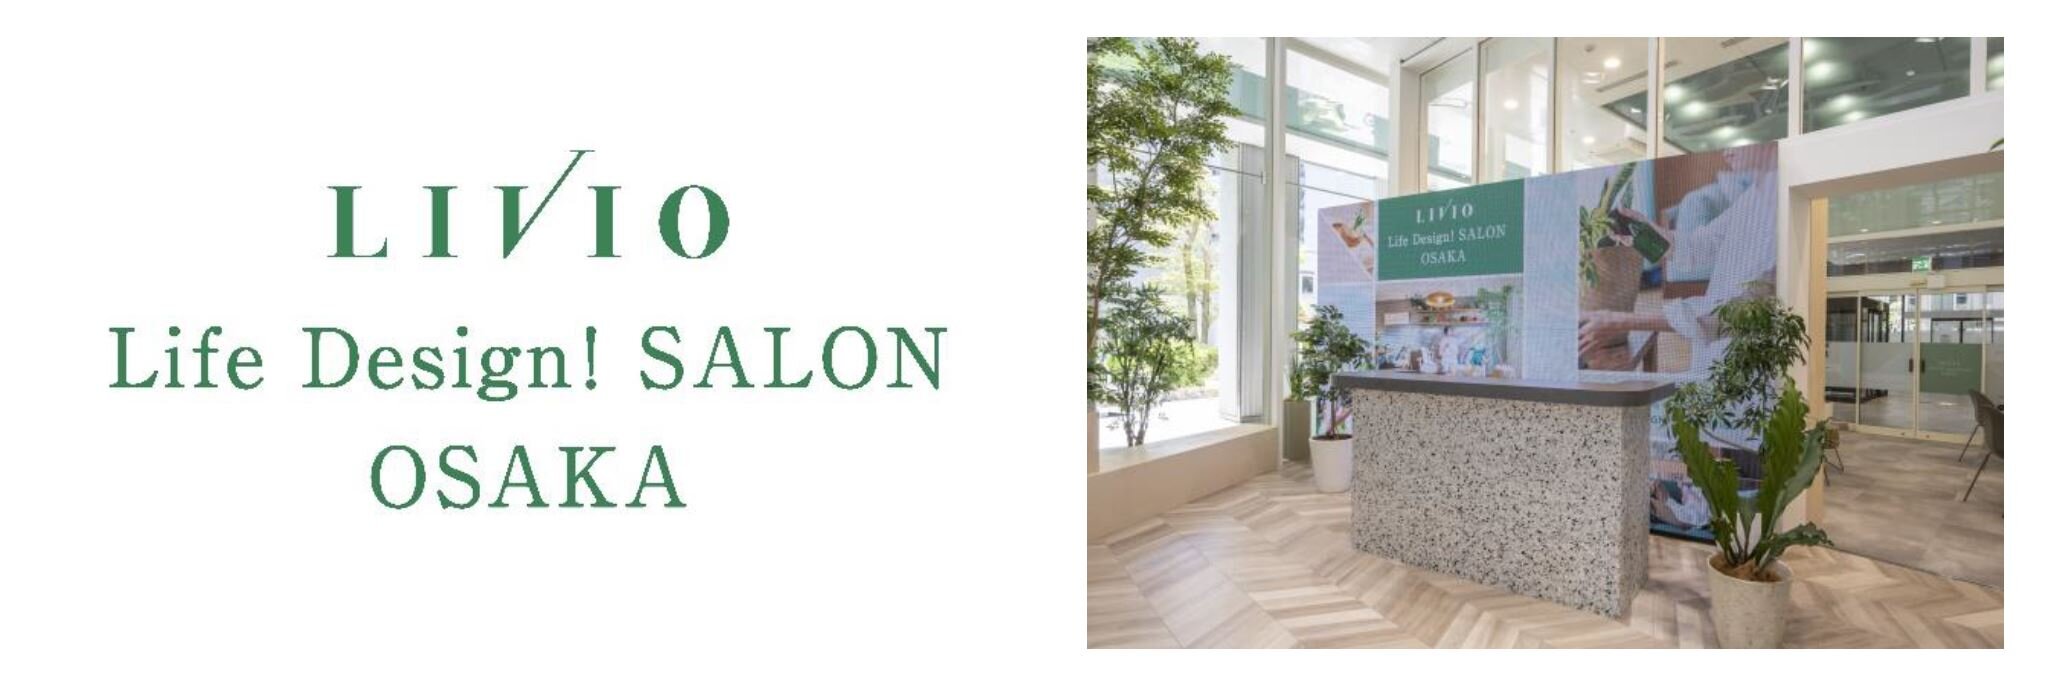 コワーキングスペースで+ONE LIFE LABの商品も体感できる！ 関西エリアの「LIVIO RAISON（リビオレゾン） 」を集約販売する常設サロン『LIVIO Life Design! SALON OSAKA』4月29日（金・祝）グランドオープン